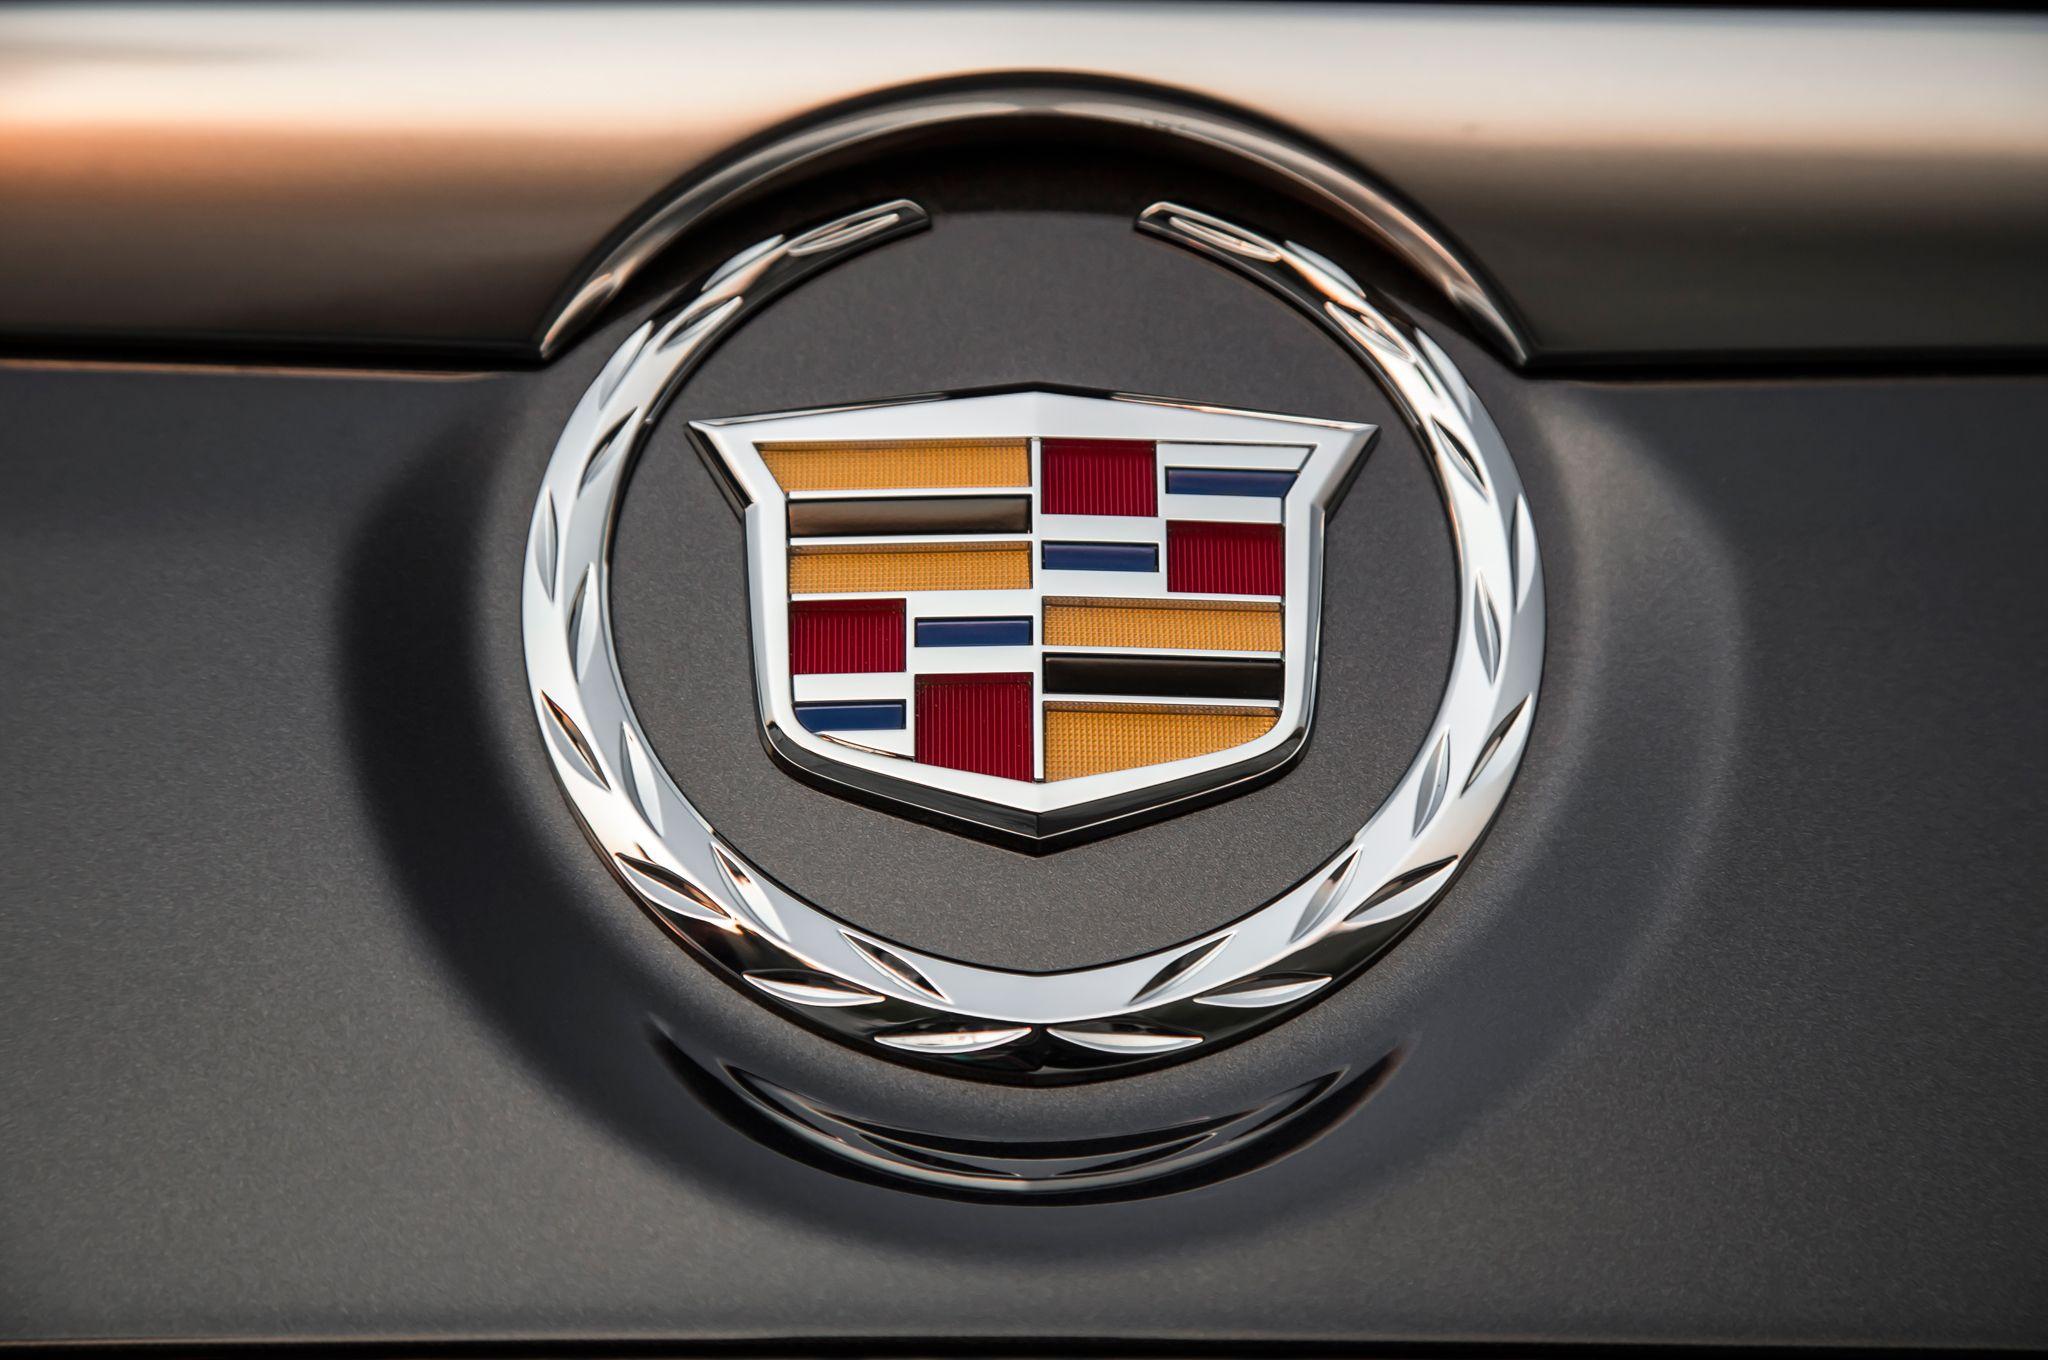 2016 New Cadillac Logo - Escalade Logos